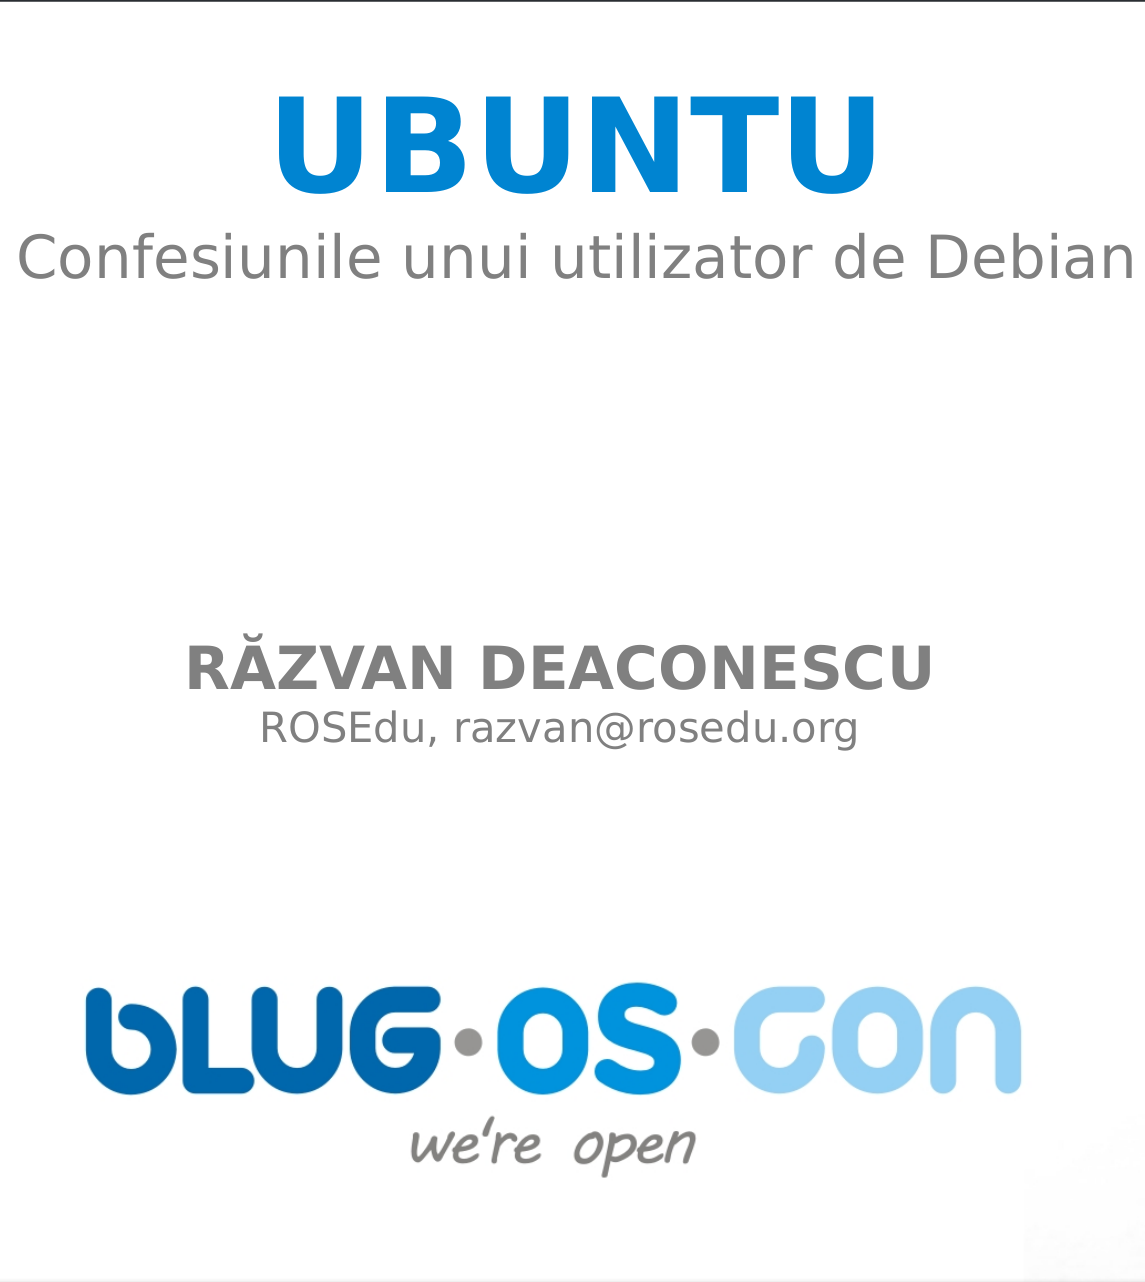 UBUNTU - Confesiunile unui utilizator de Debian